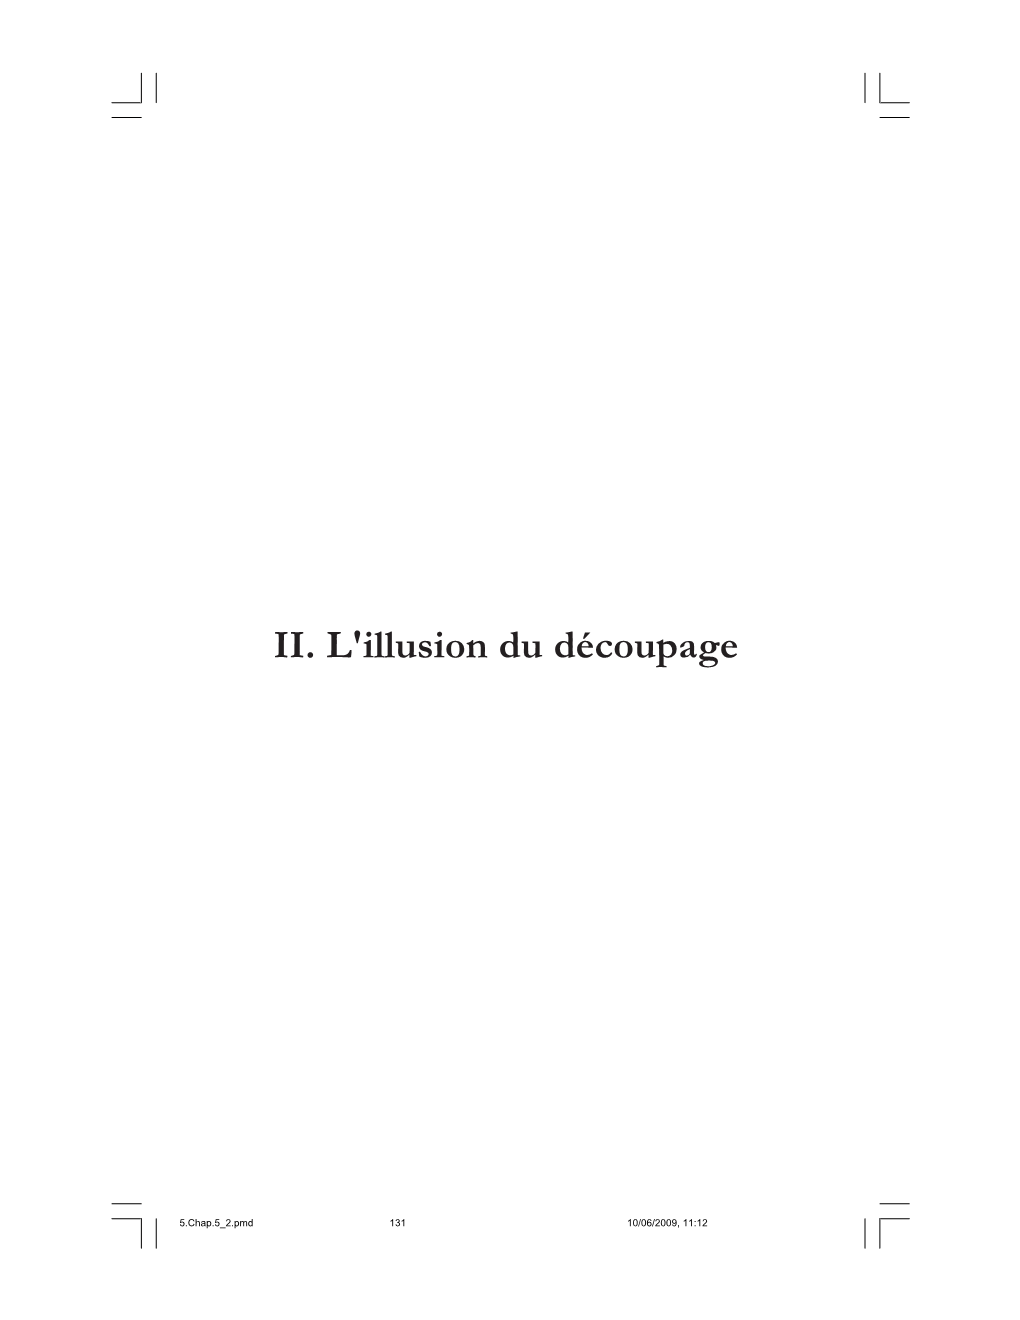 II. L'illusion Du Découpage